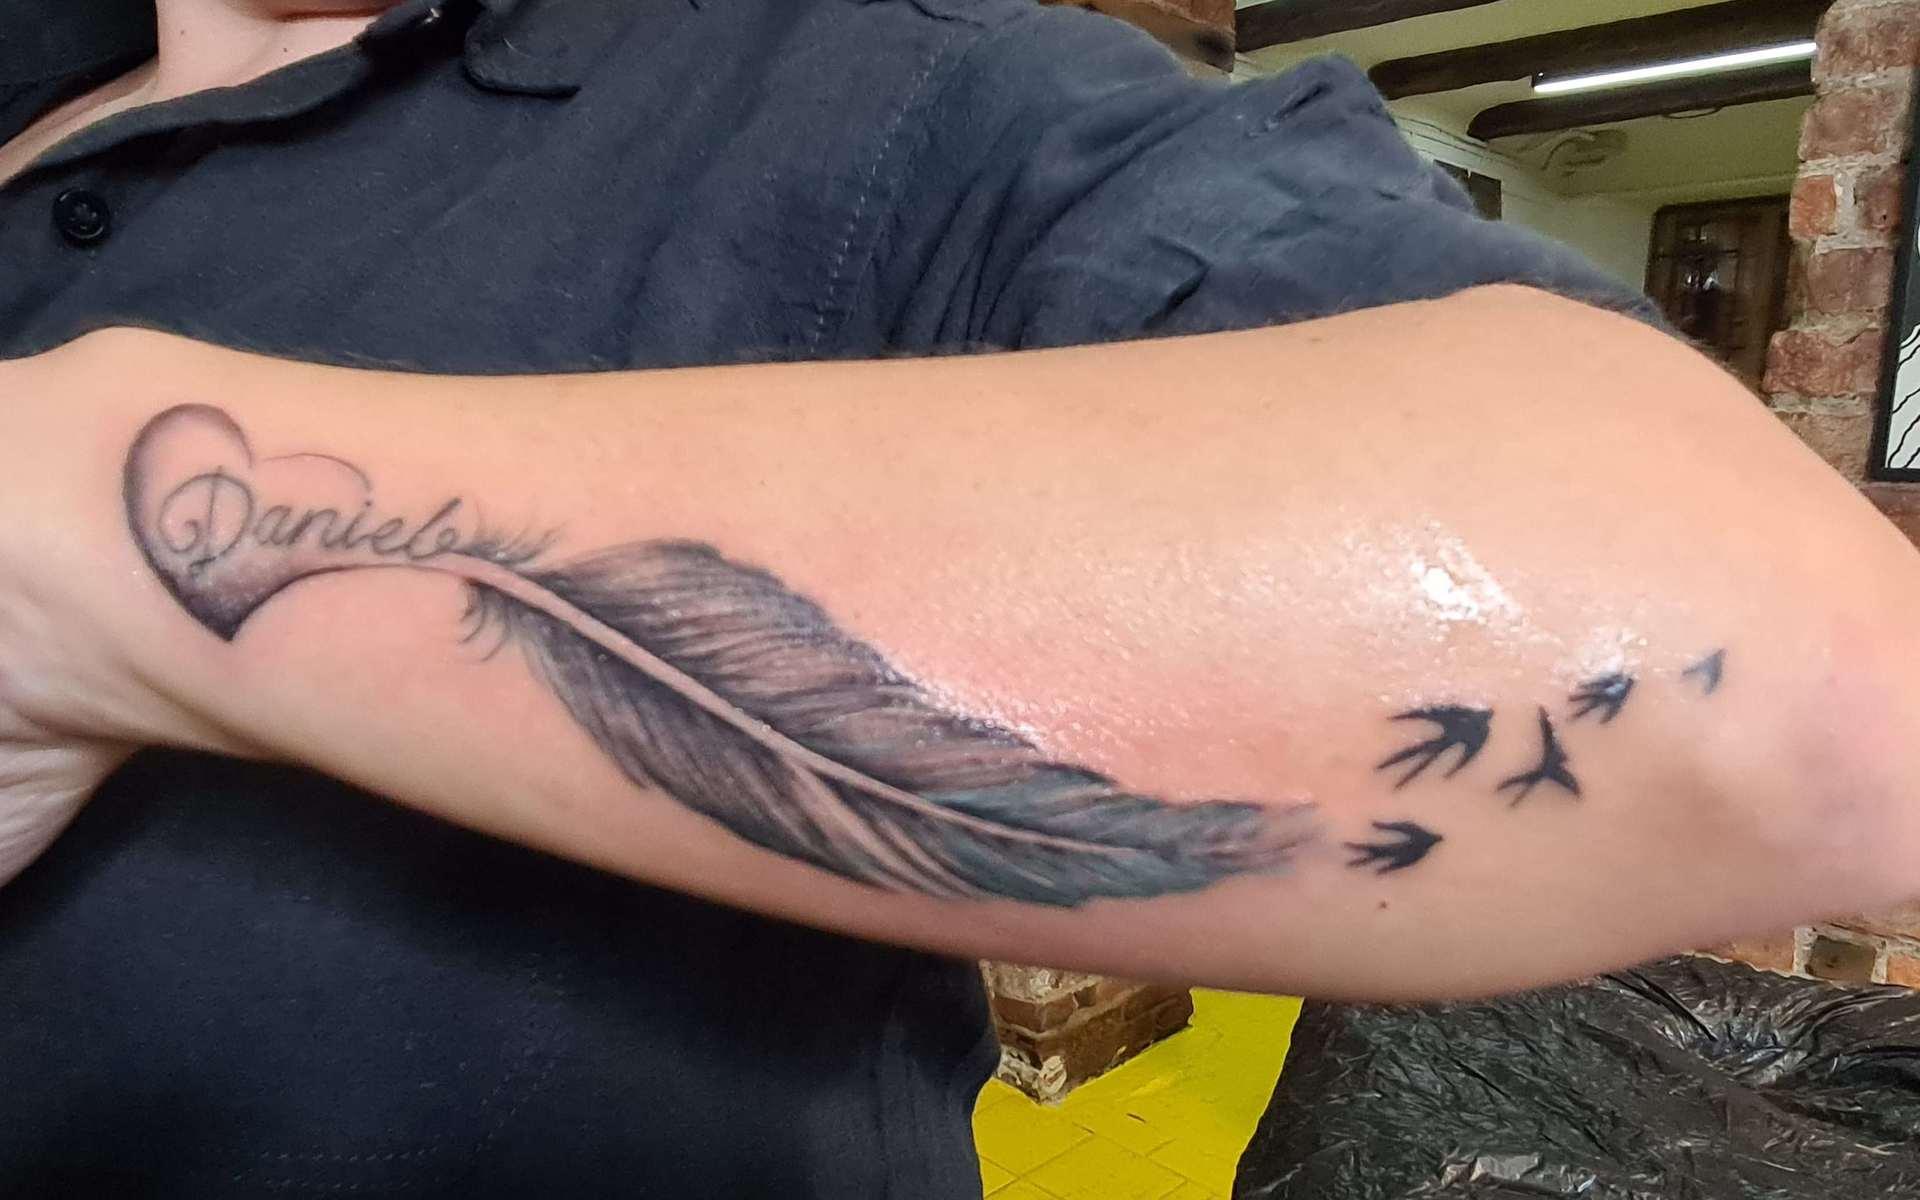 Renata Anderssons tatuering är till minne av hennes lillebror som gick bort för snart tre år sedan. ”Daniel, saknaden är stort efter att du flög vidare till himlen. Här är tatueringen alldeles nygjord.”